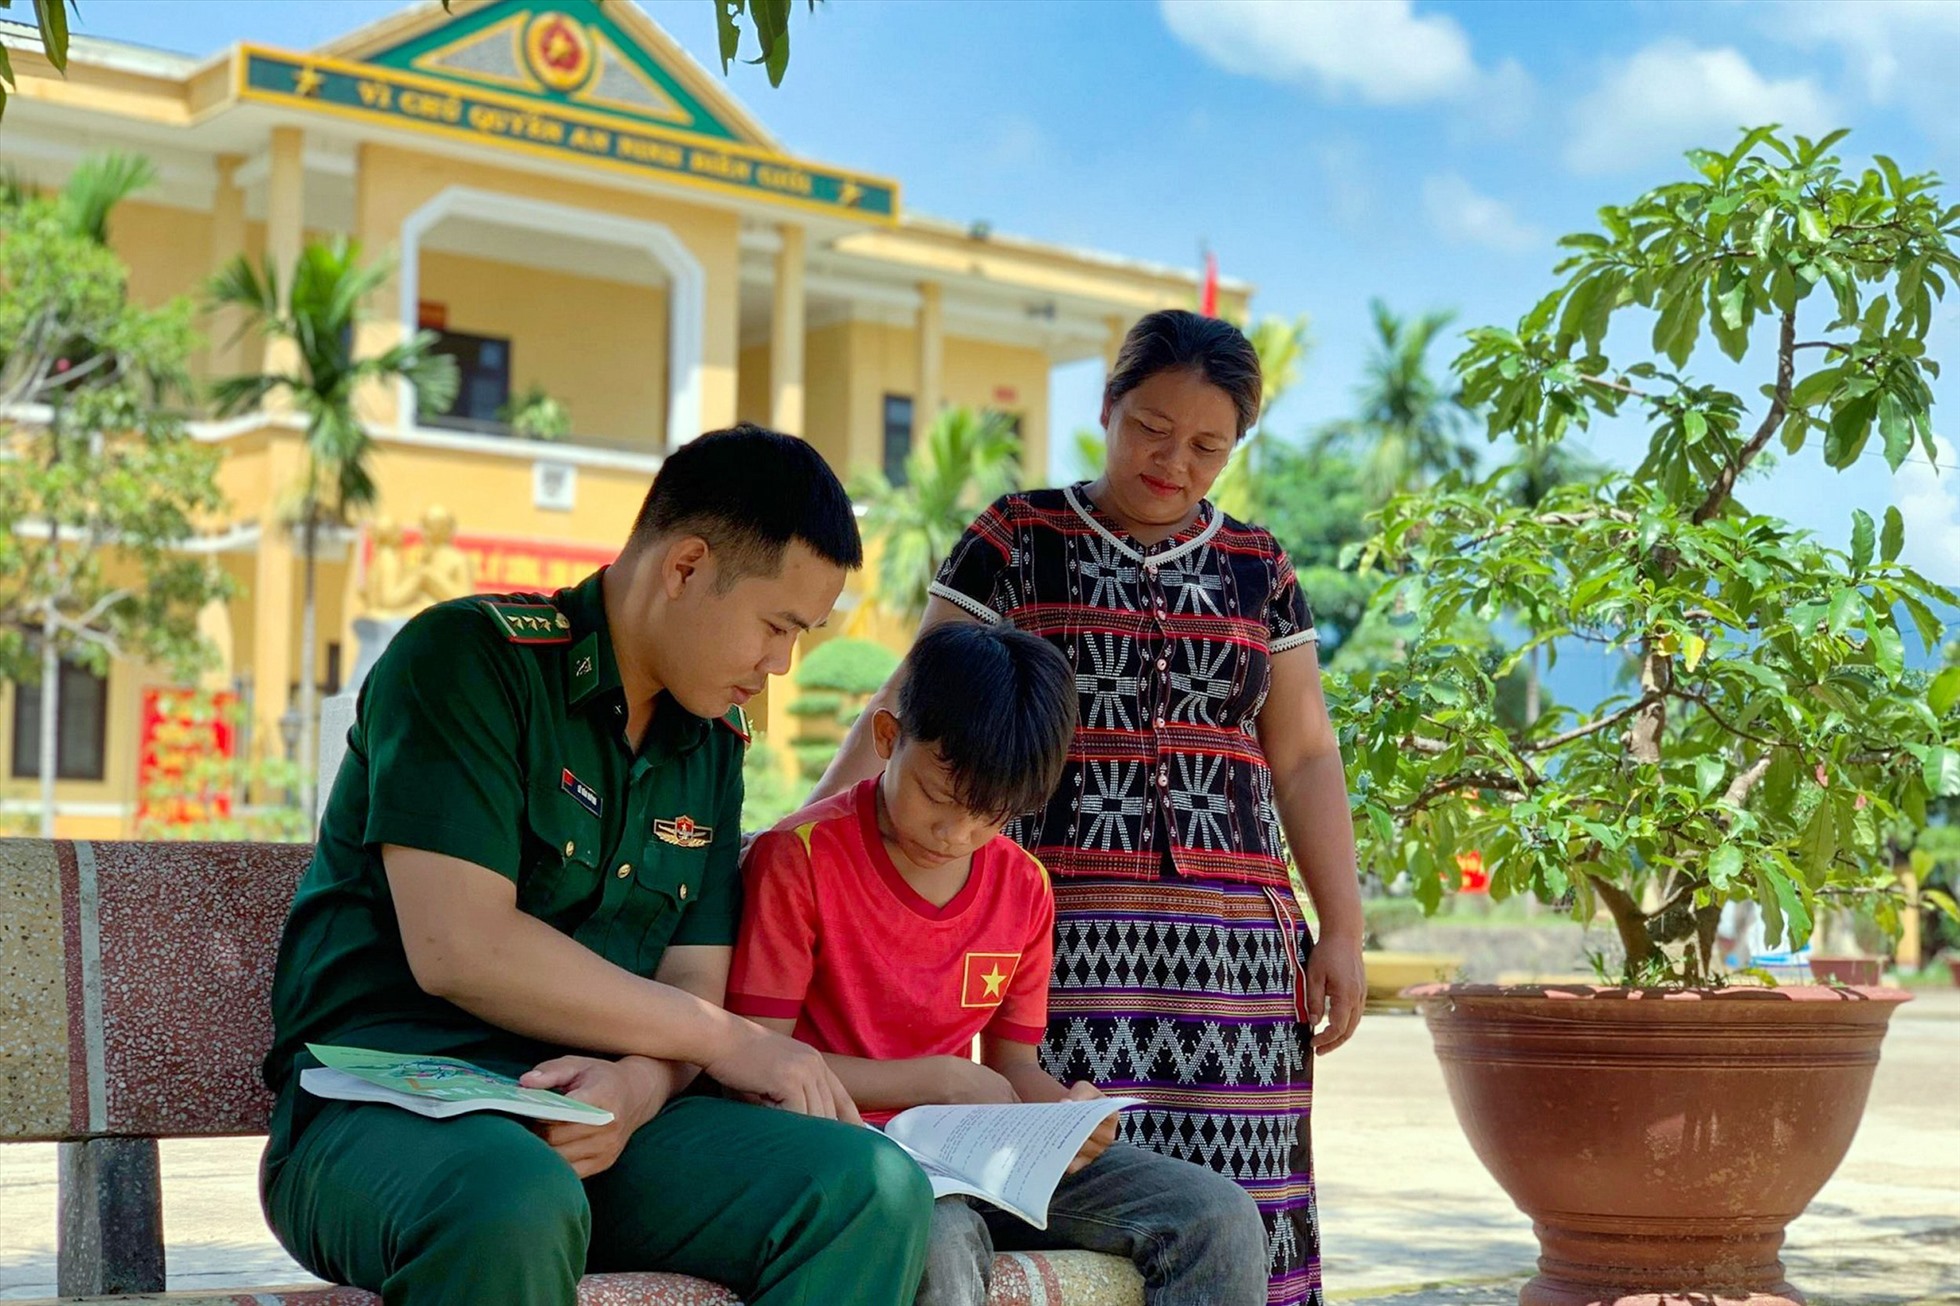 Để ươm mầm tri thức vùng biên, Bộ chỉ huy BĐBP tỉnh Thừa Thiên Huế đã nhận nuôi, đỡ đầu cho 78 em học sinh có hoàn cảnh khó khăn ở khu vực biên giới.